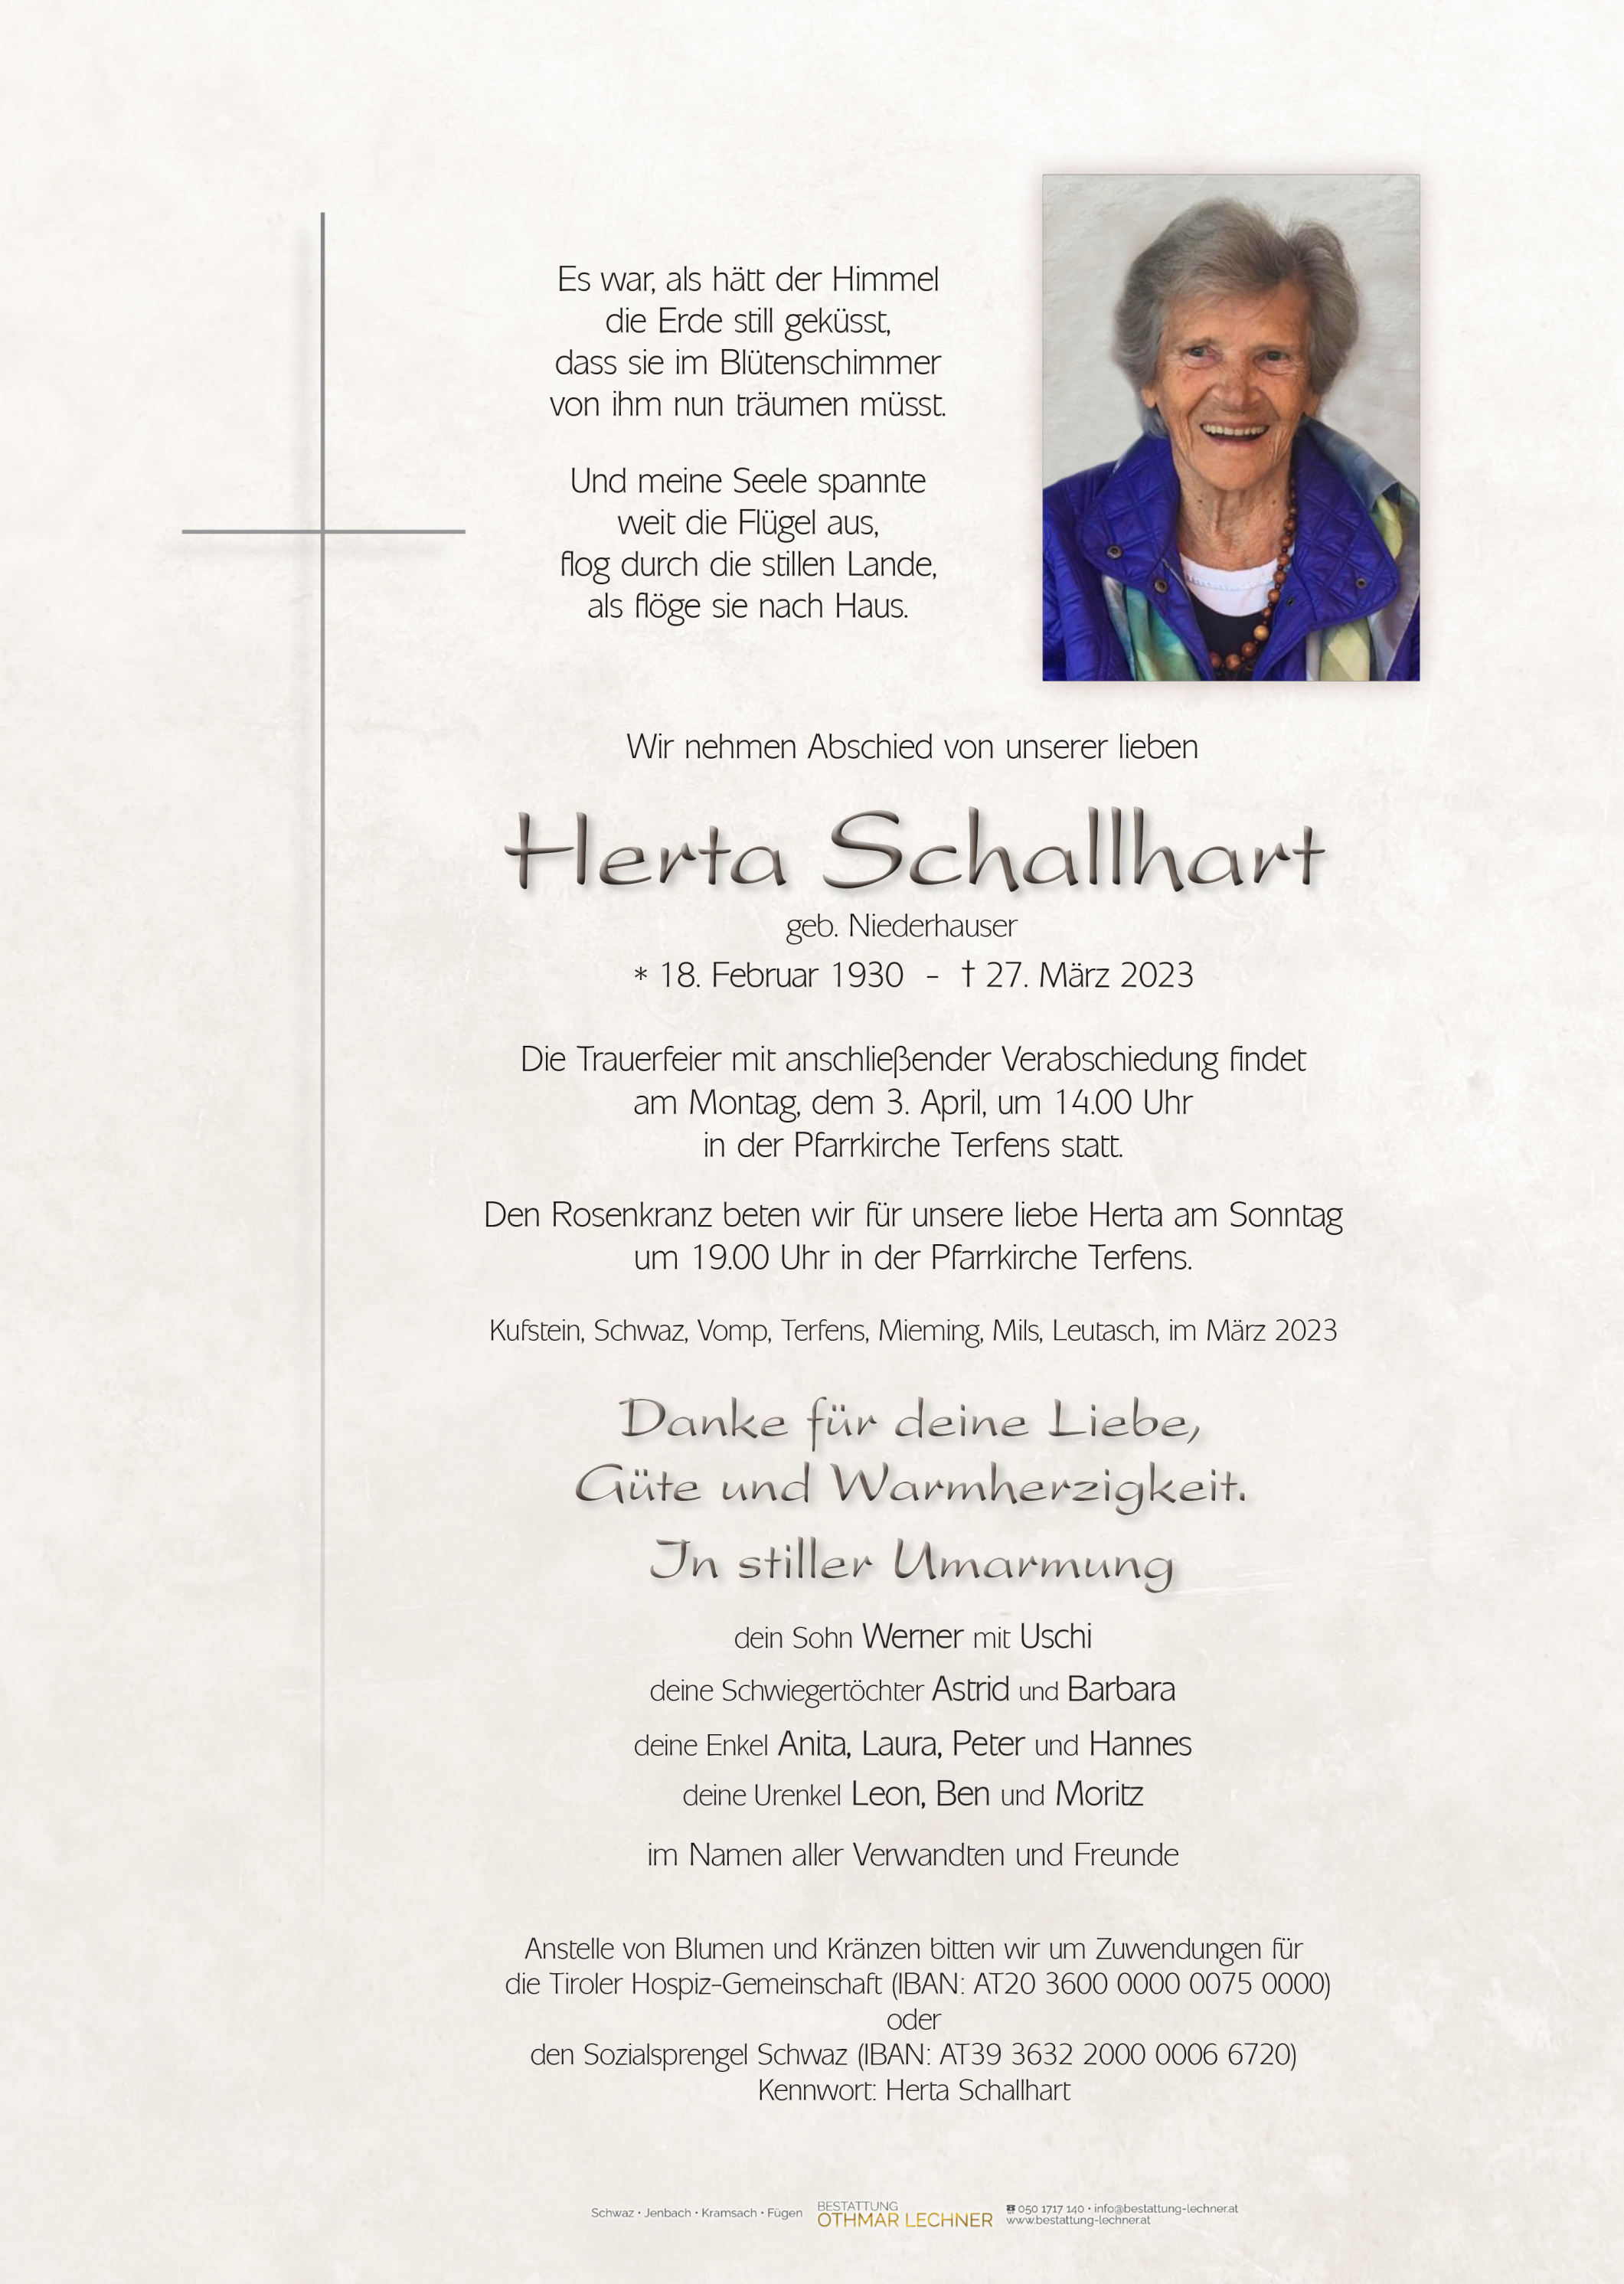 Herta Schallhart